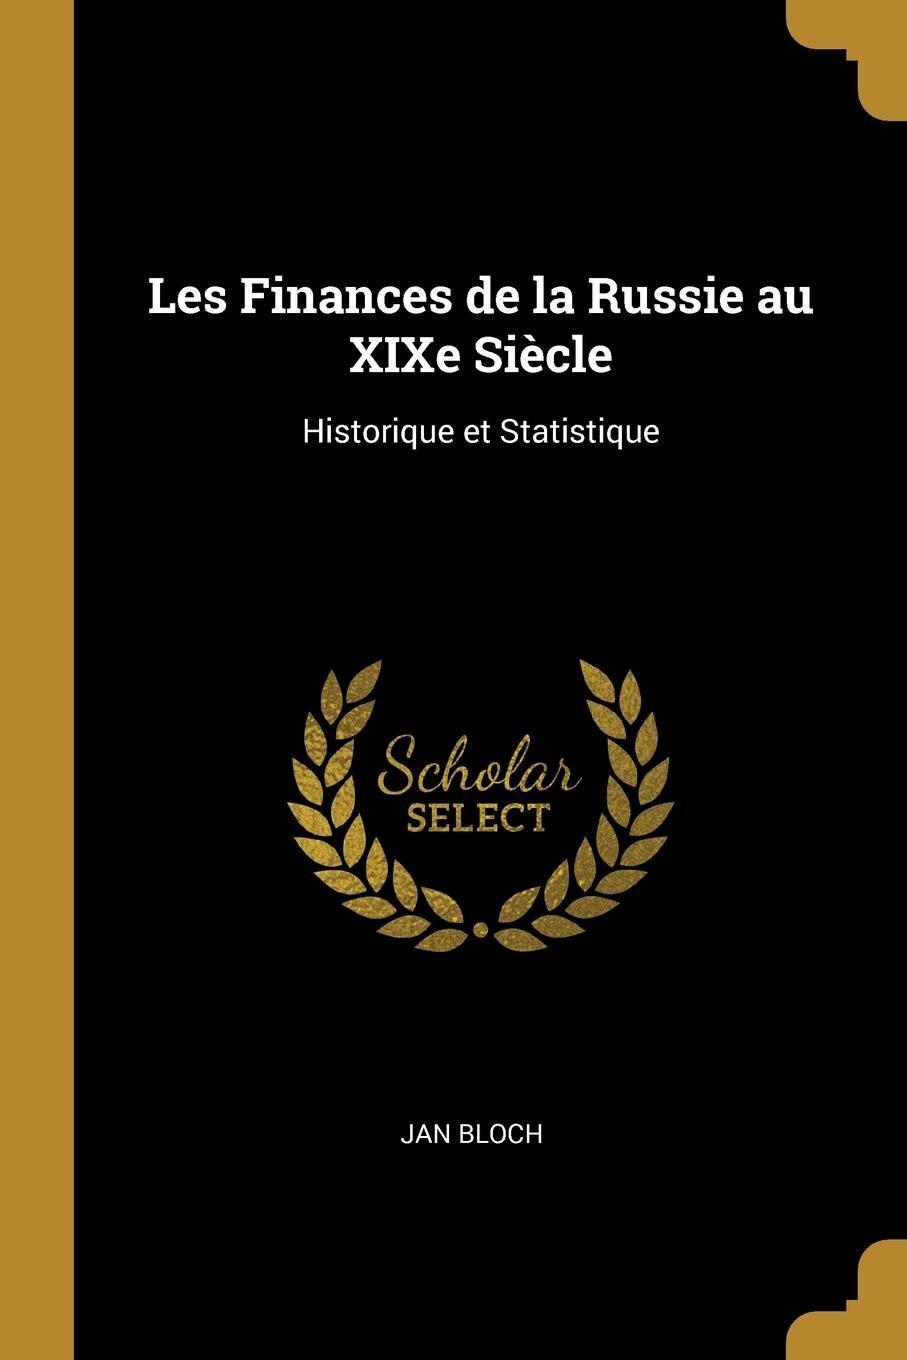 Les Finances de la Russie au XIXe Siecle. Historique et Statistique